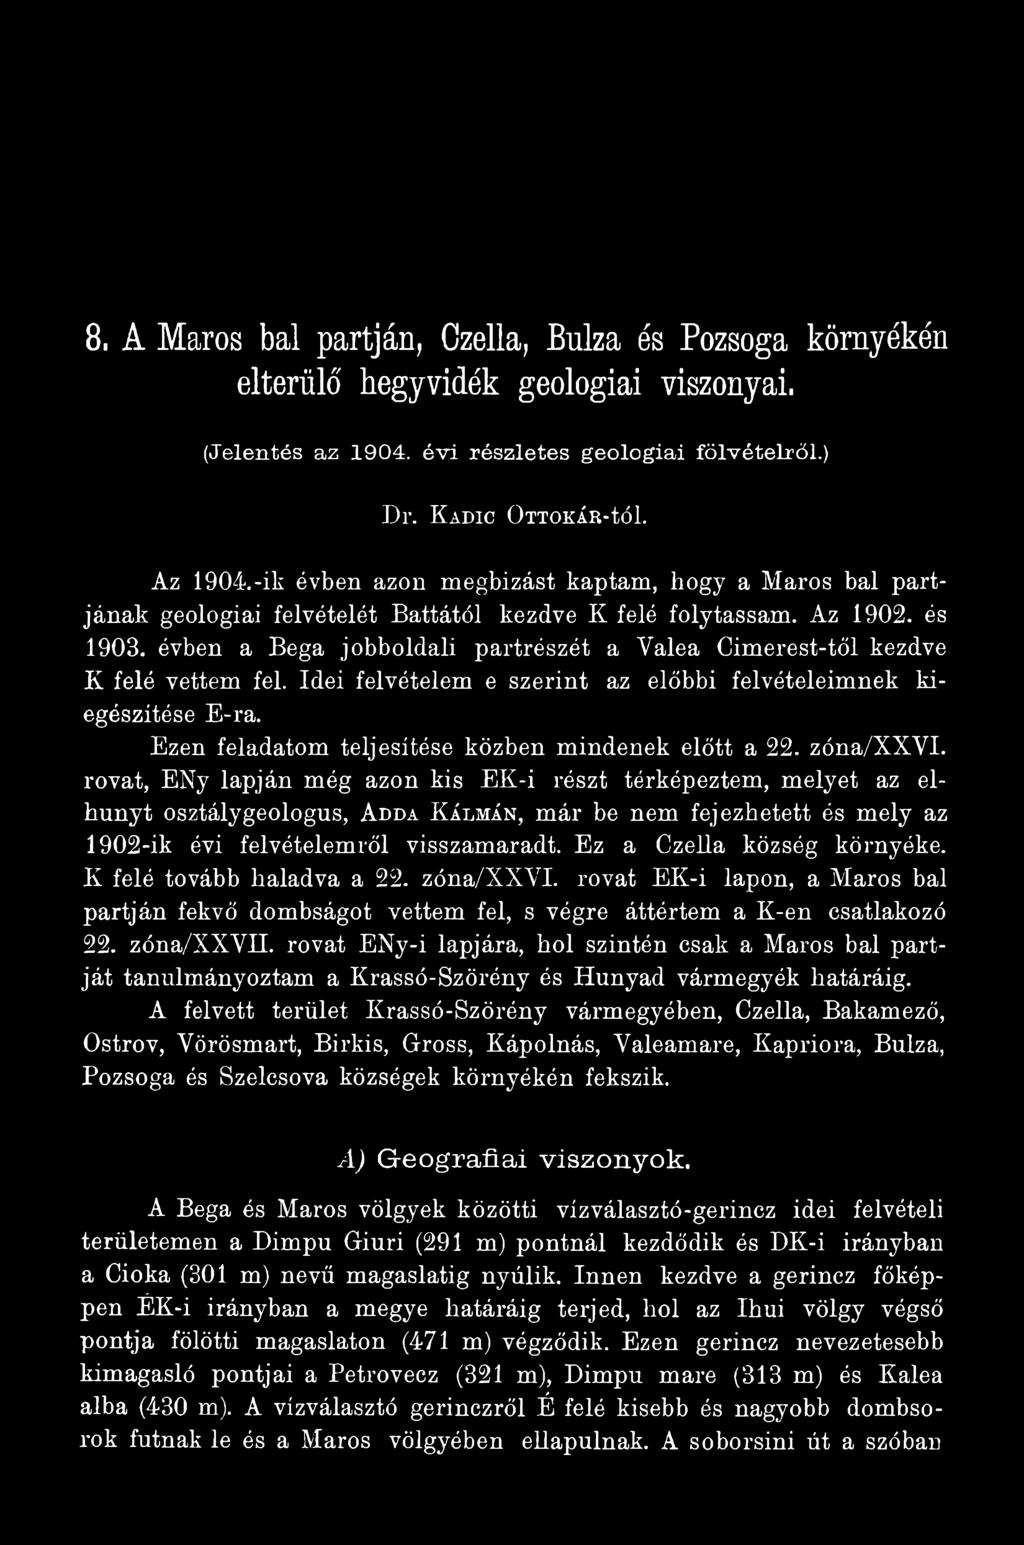 rovat, ENy lapján még azon kis EK-i részt térképeztem, melyet az elhunyt osztálygeologus, Adda Kálmán, már be nem fejezhetett és mely az 1902-ik évi felvételemről visszamaradt.